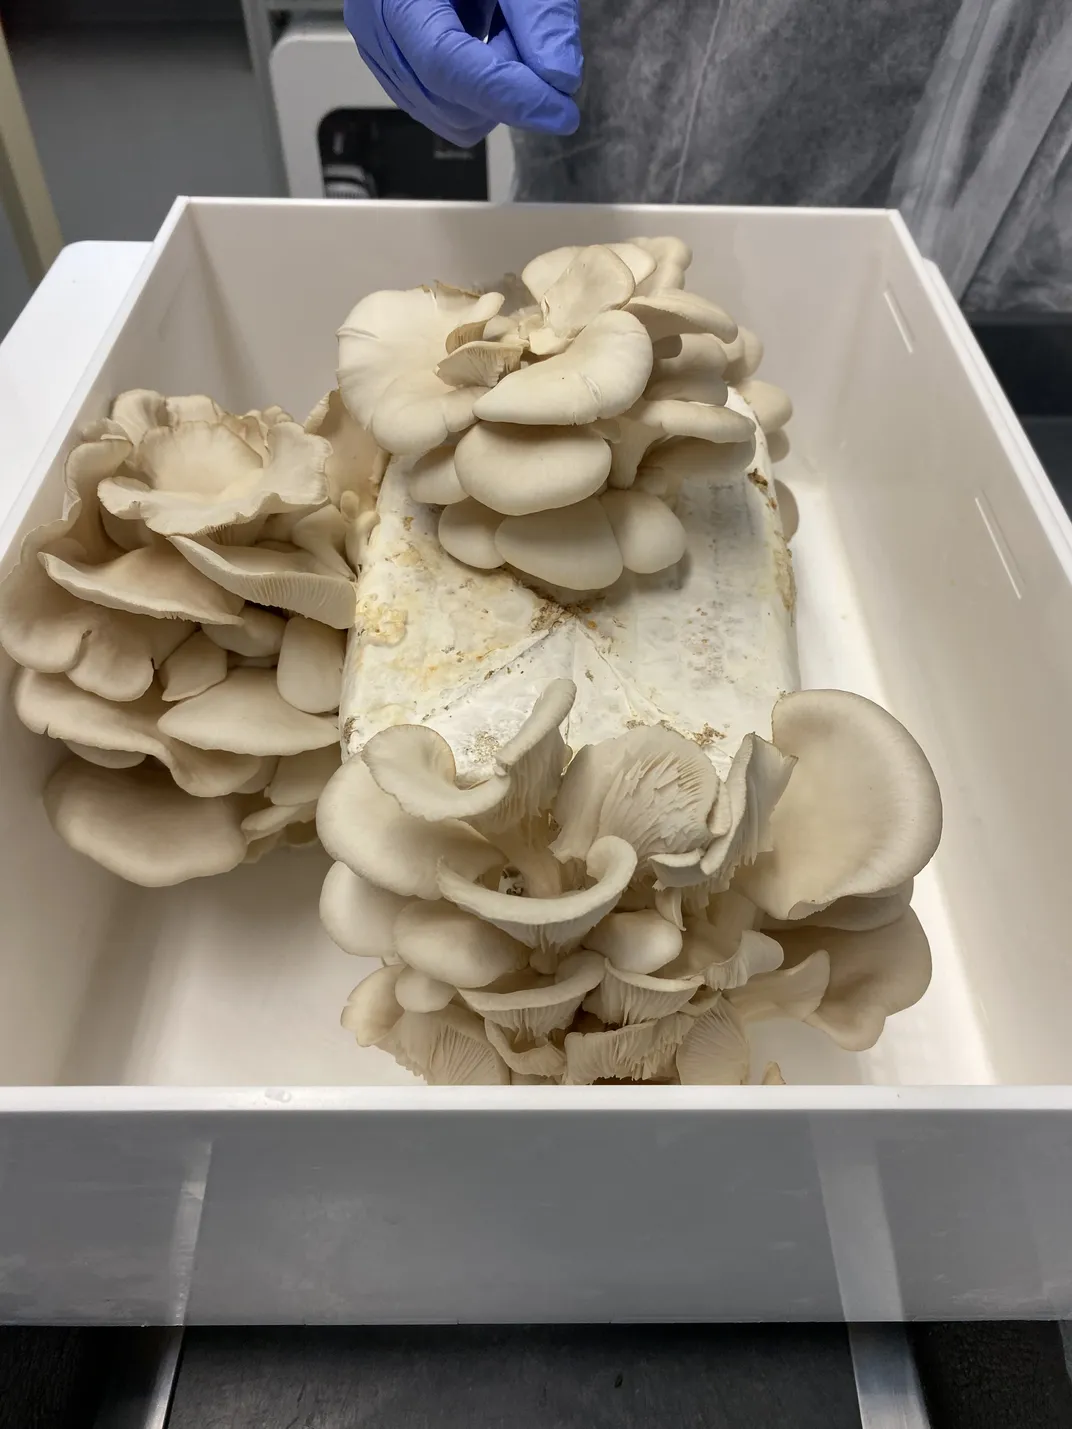 a tub of white mushrooms